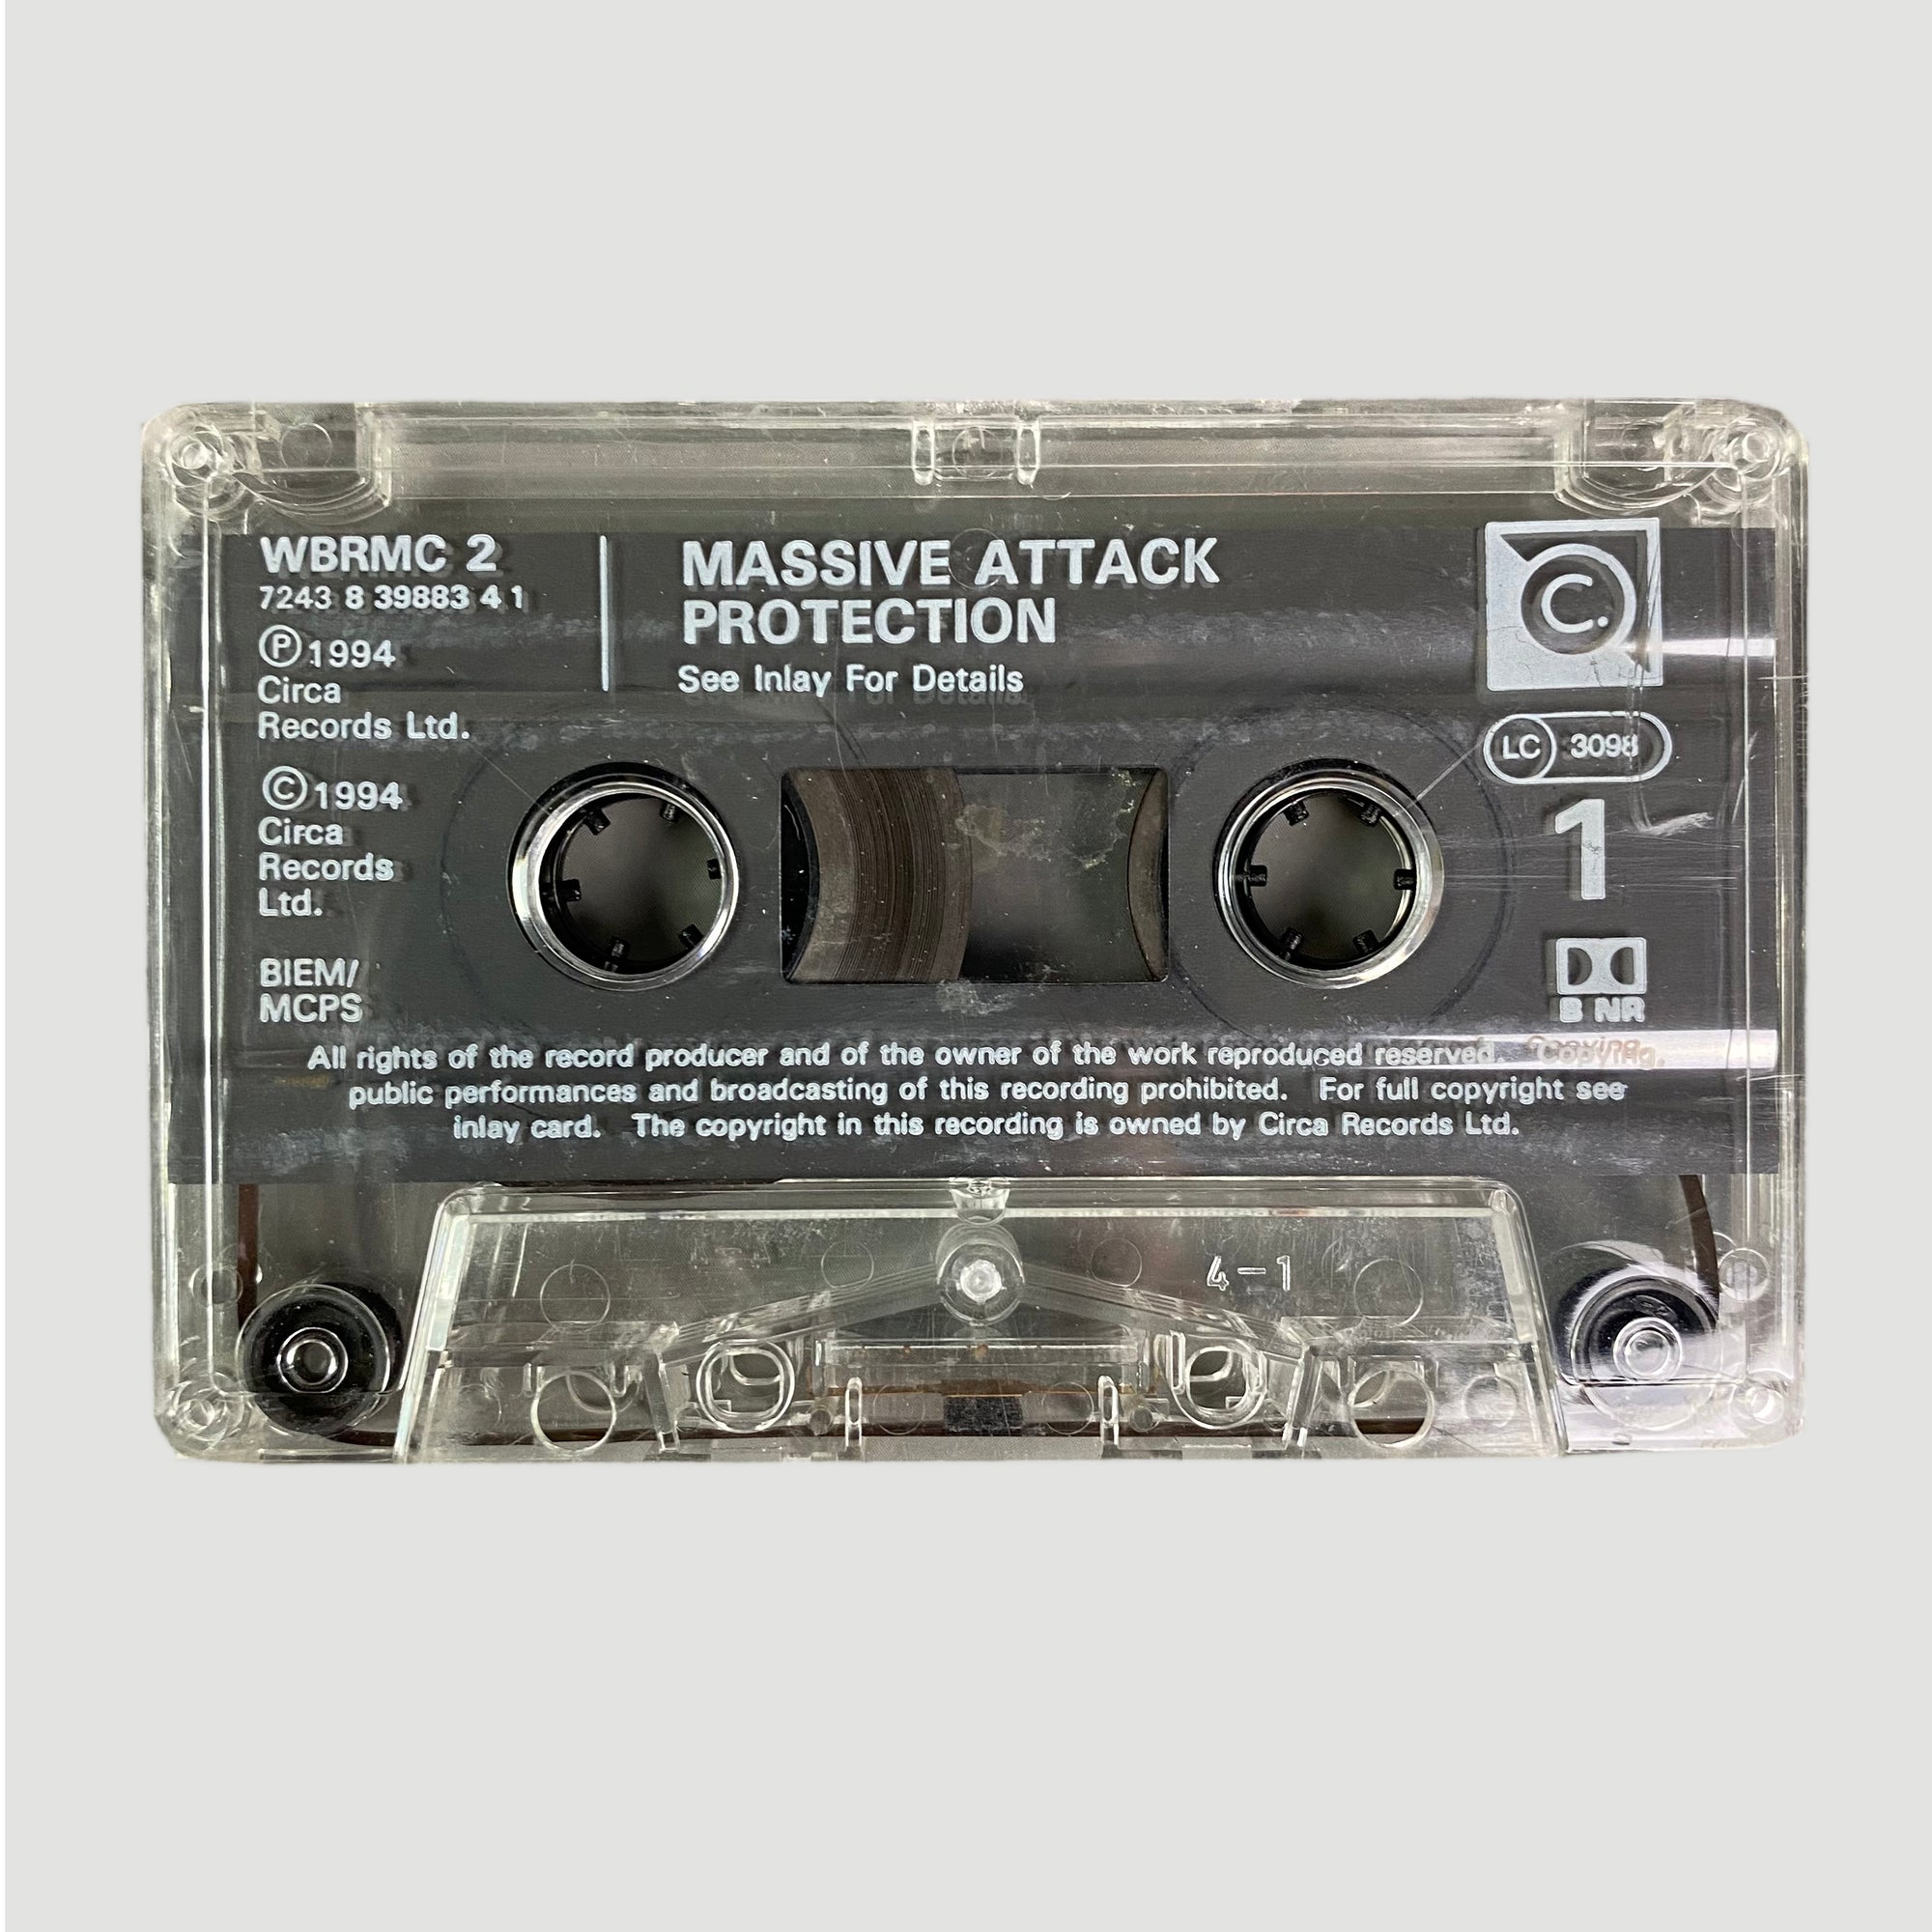 1994 Massive Attack Protection Cassette